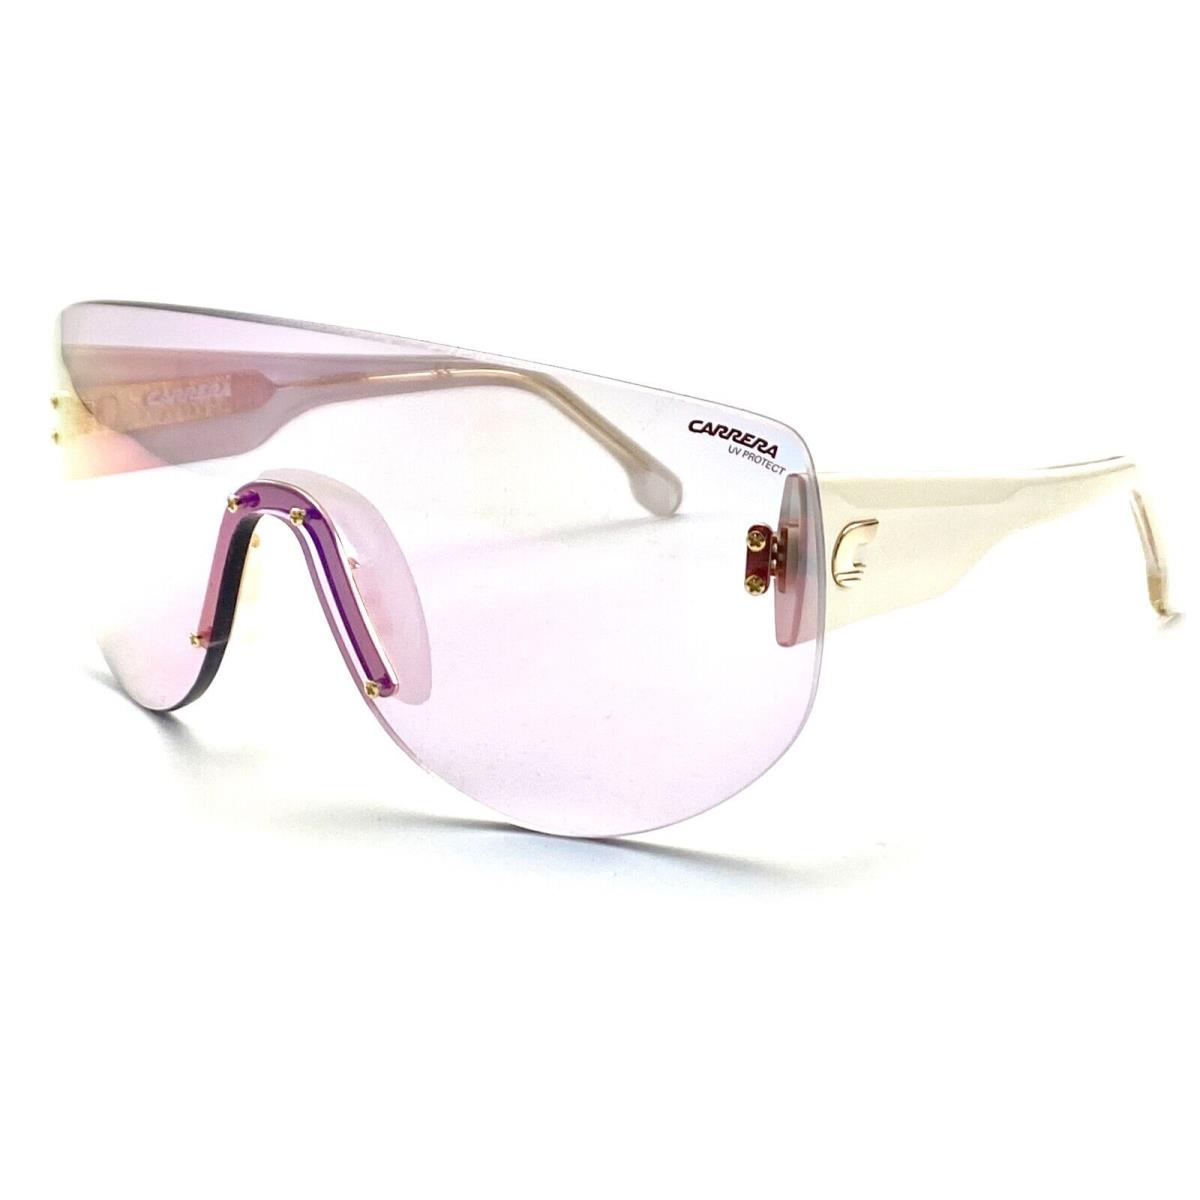 Carrera Flagbag 12 2UCTE White Sunglasses 99-01 140 V - Frame: Black, Lens: Pink